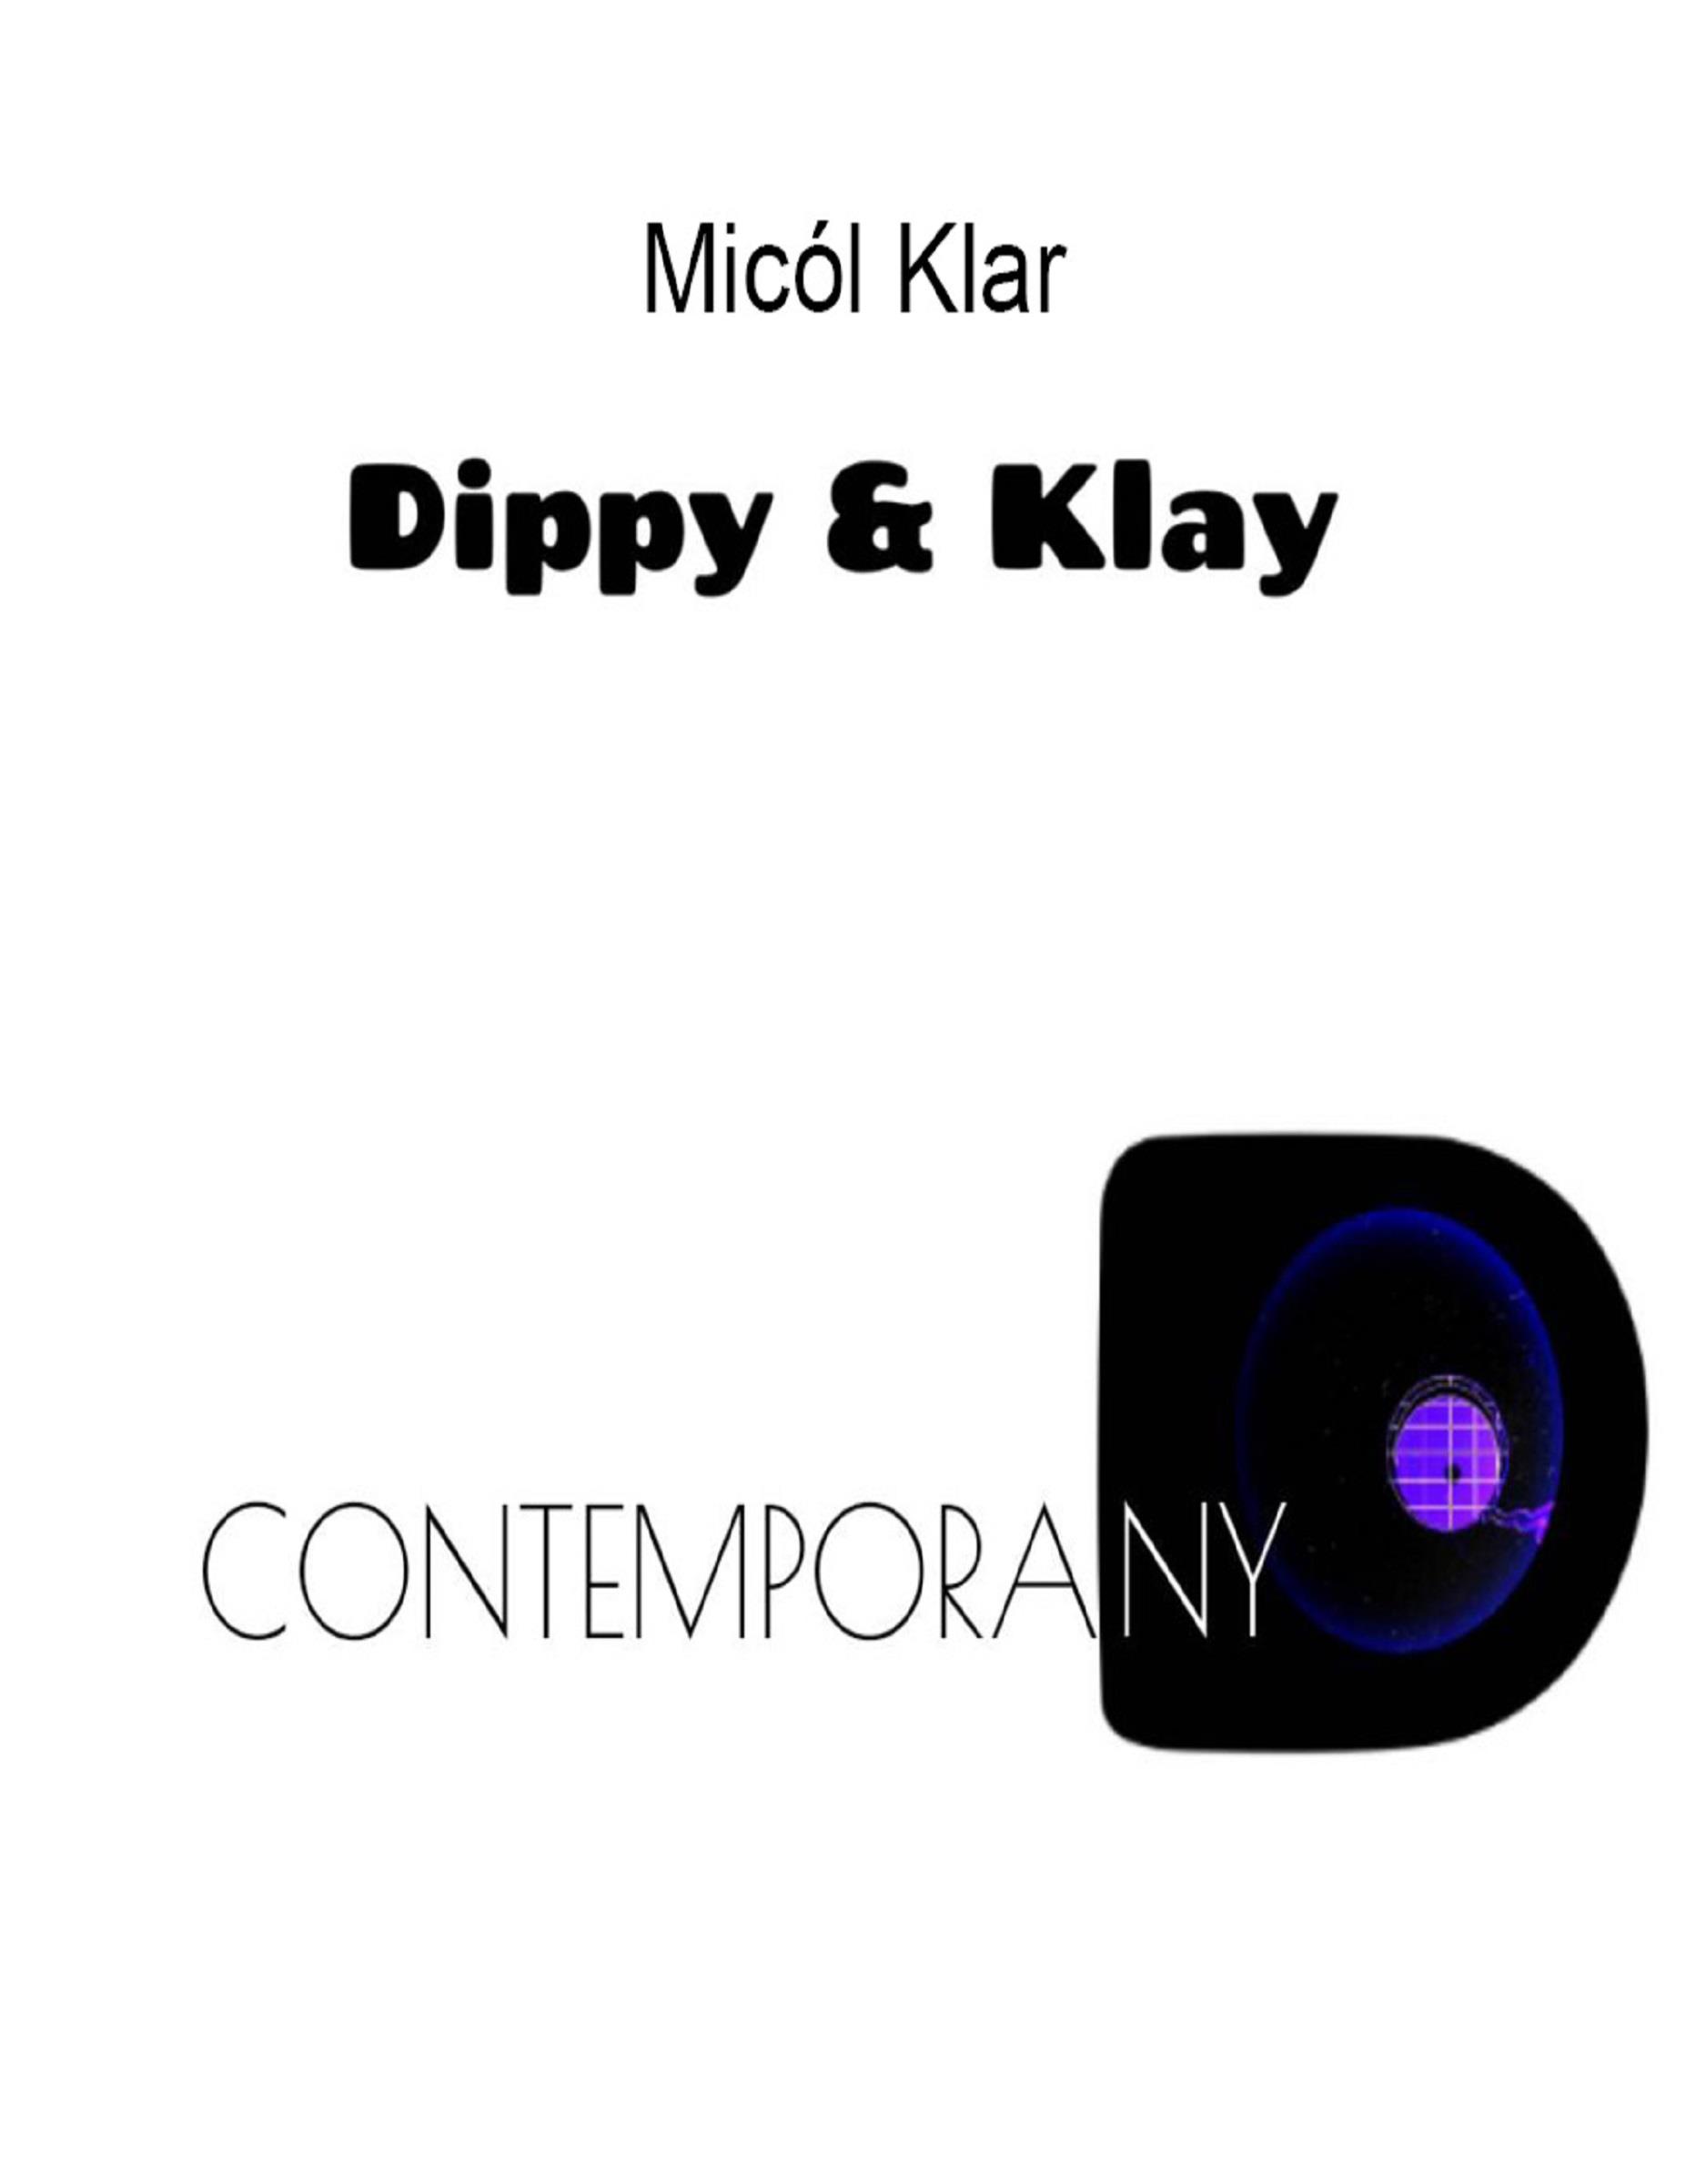 Dippy & klay contemporany